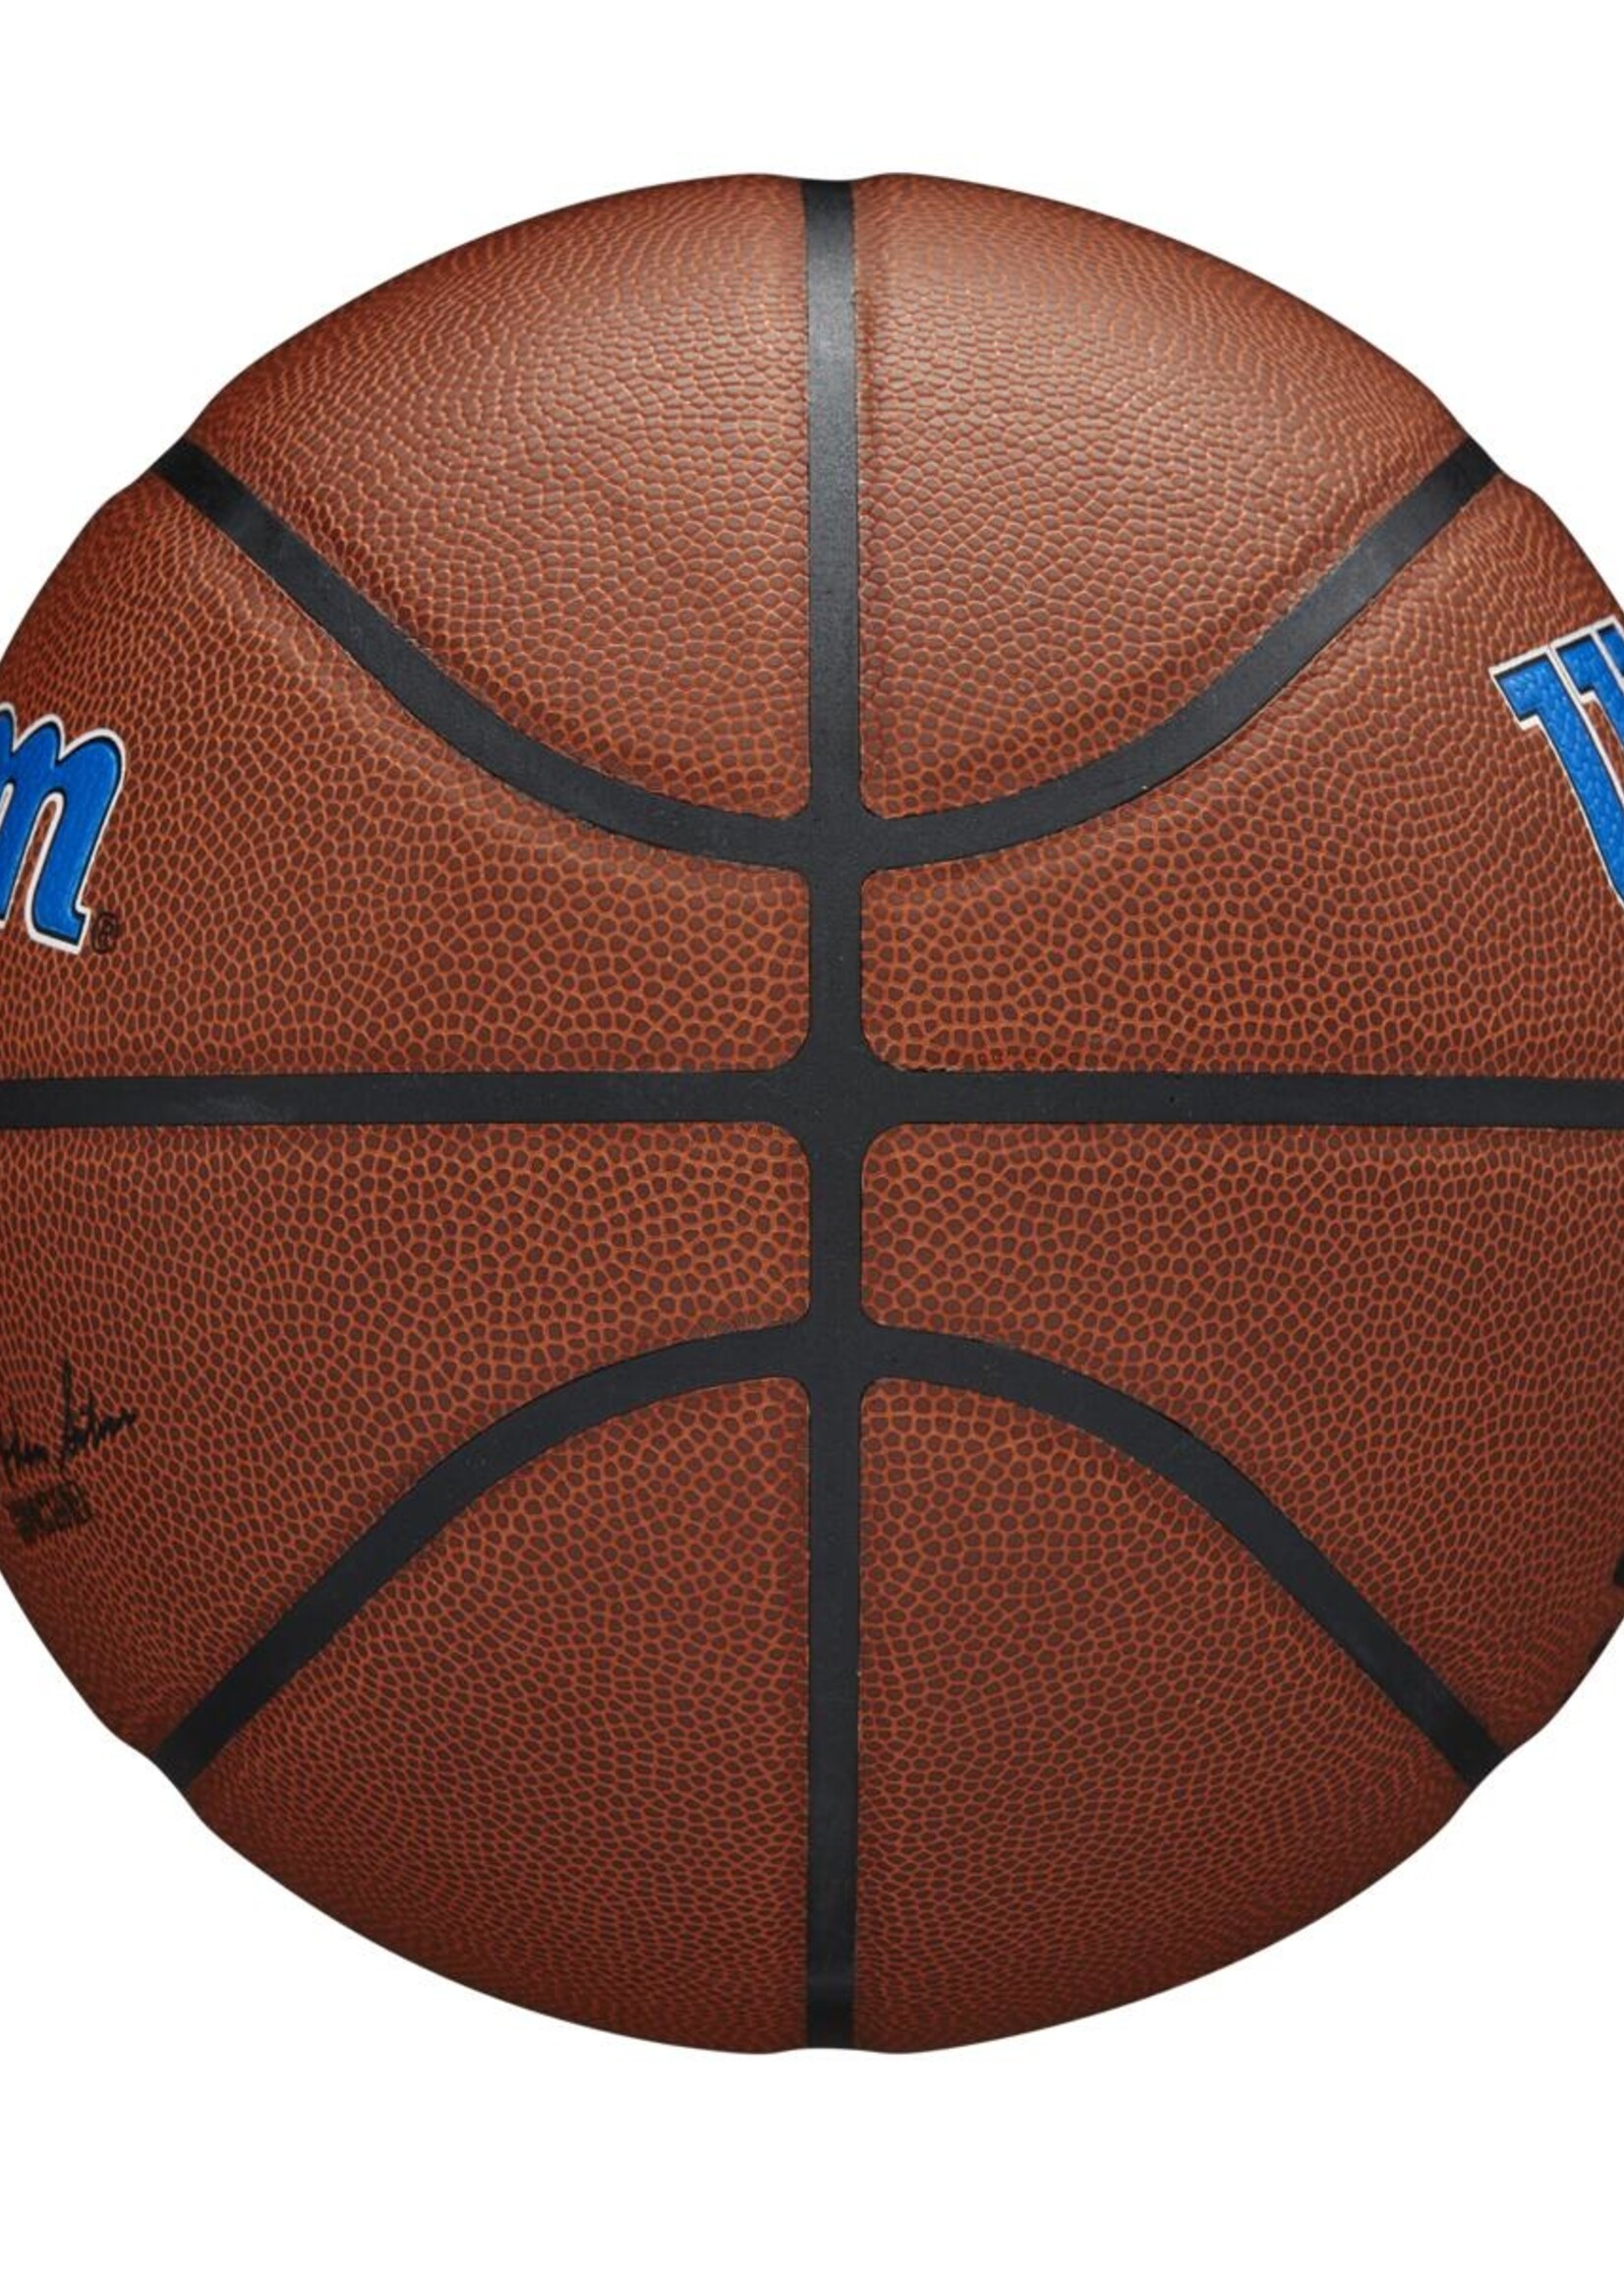 Wilson Wilson NBA NEW YORK KNICKS Composite Indoor / Outdoor Basketbal (7)